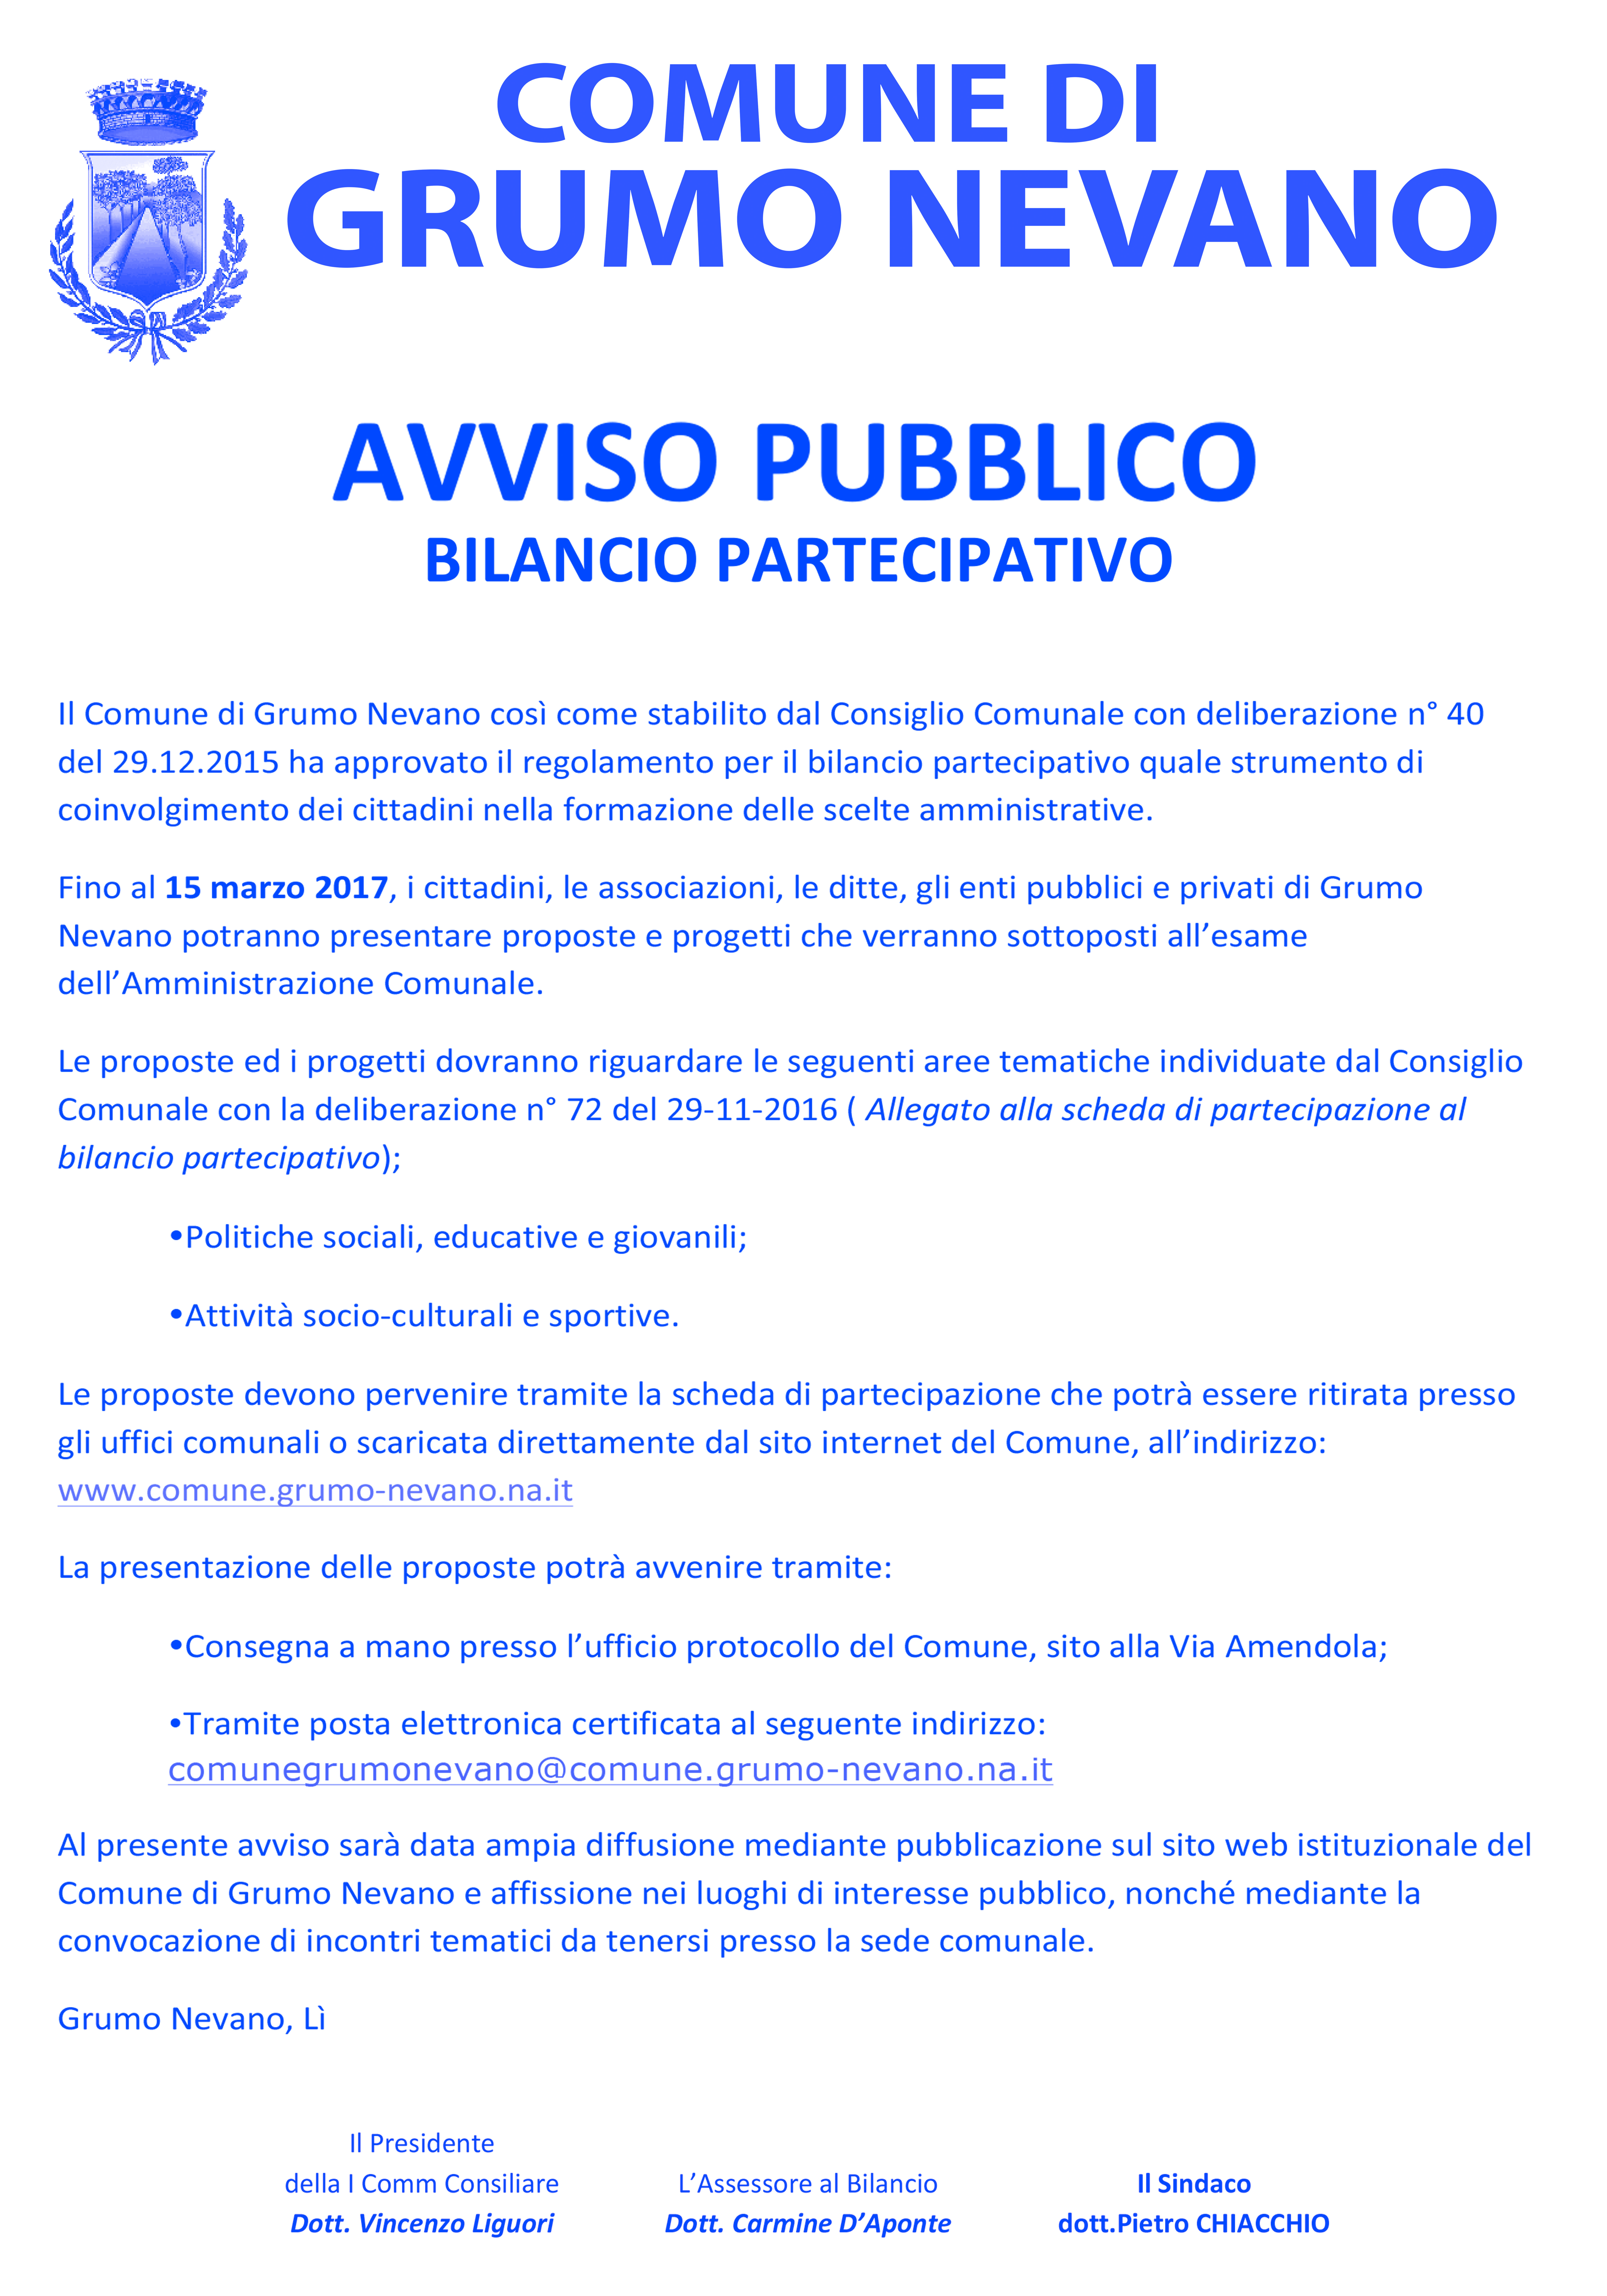 AVVISO PUBBLICO  BILANCIO PARTECIPATIVO 2017